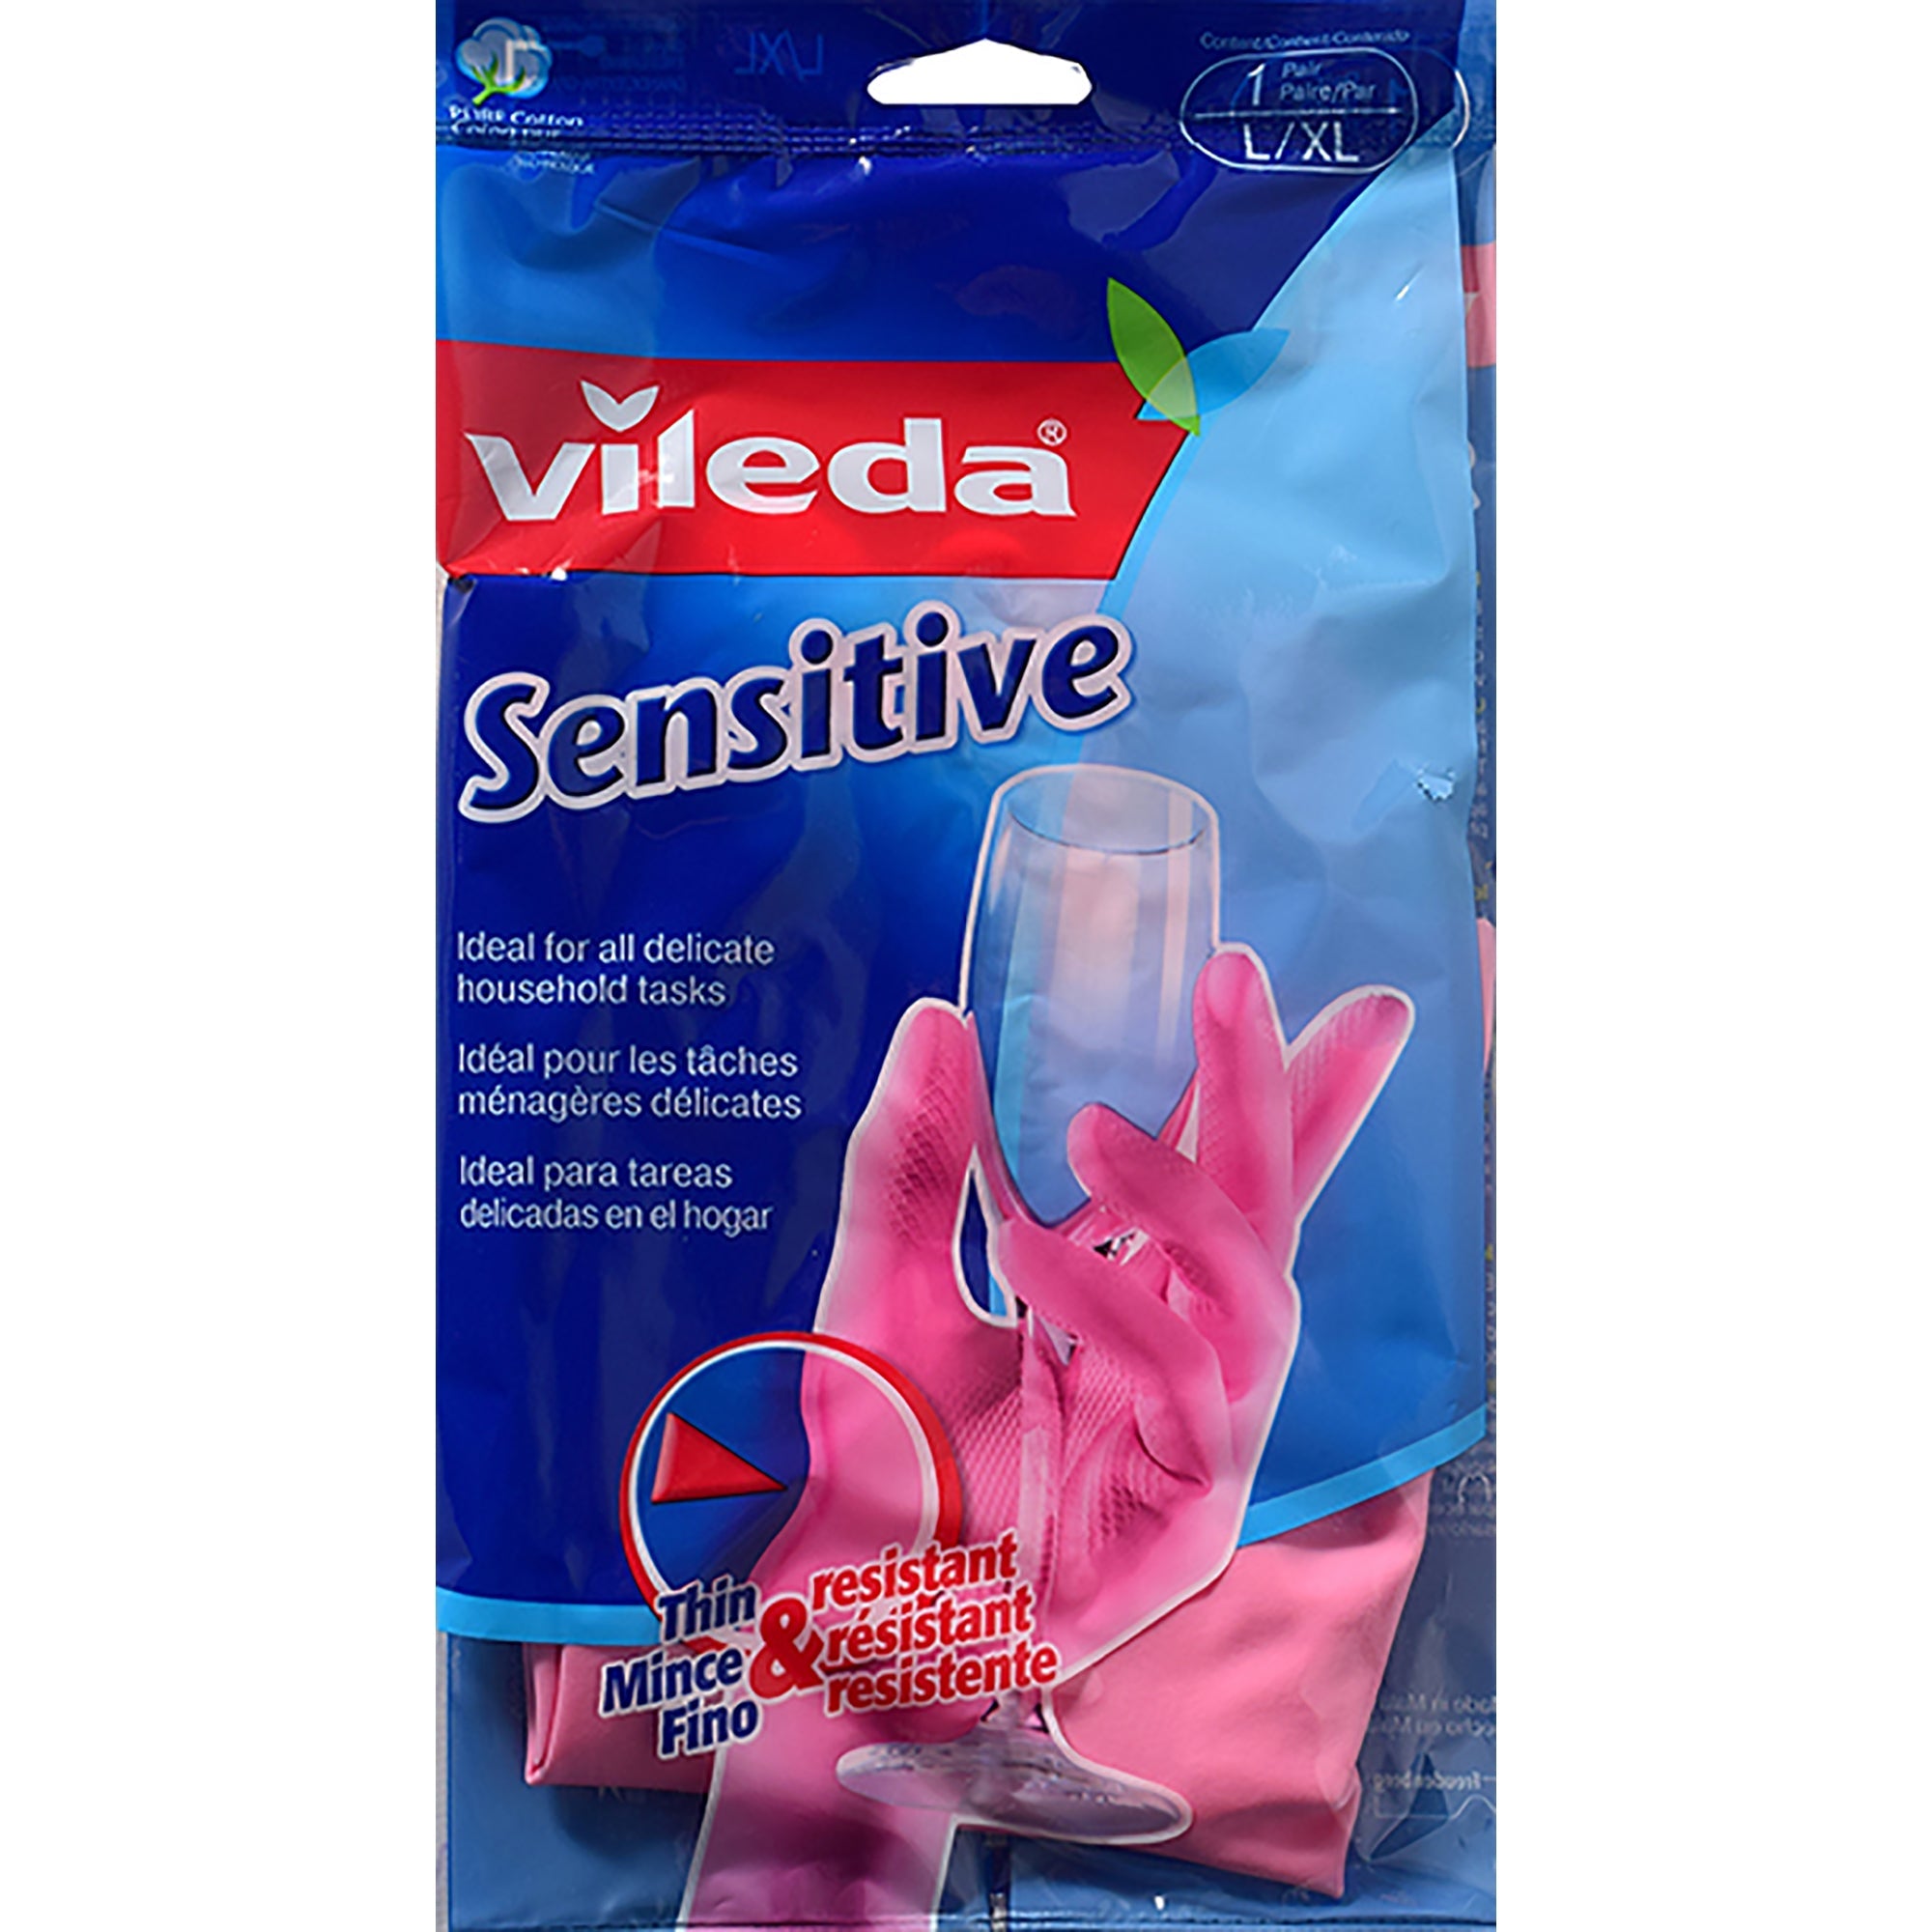 Vileda 1 Pair of Gloves - Sensitive Large/XLarge